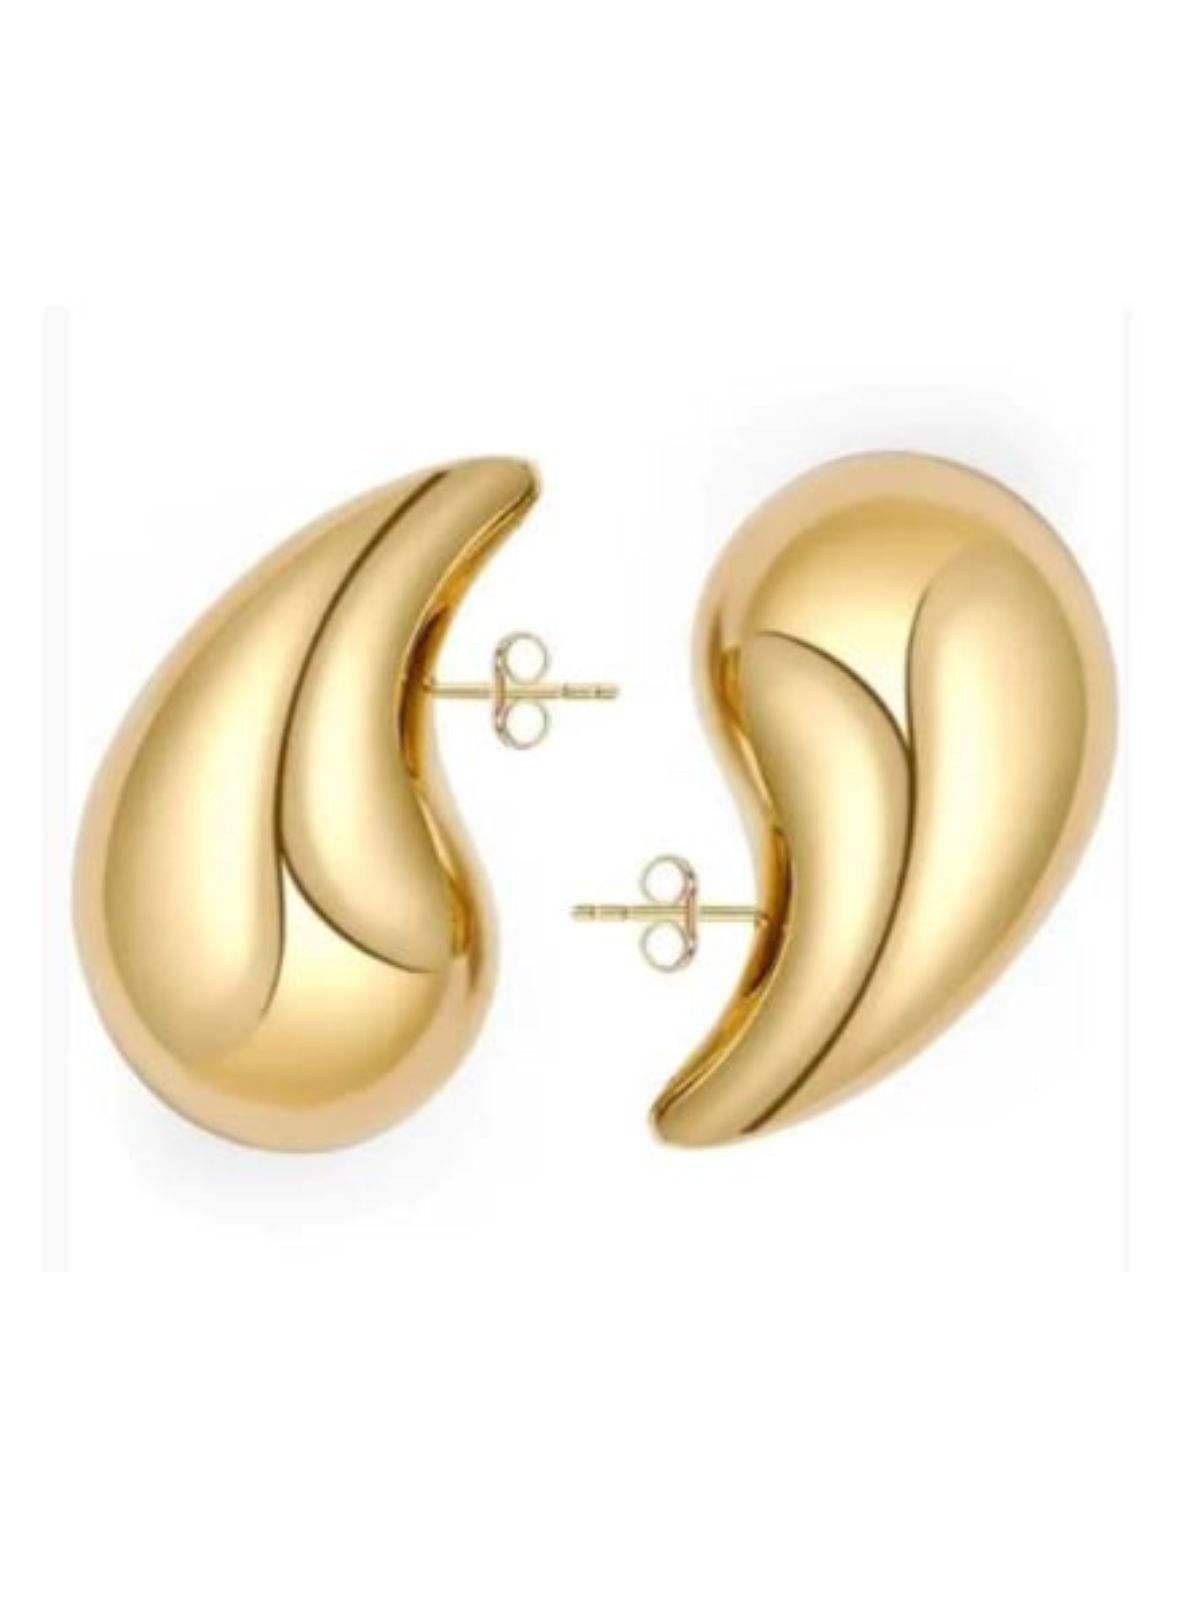 Droplet Earrings / Gold